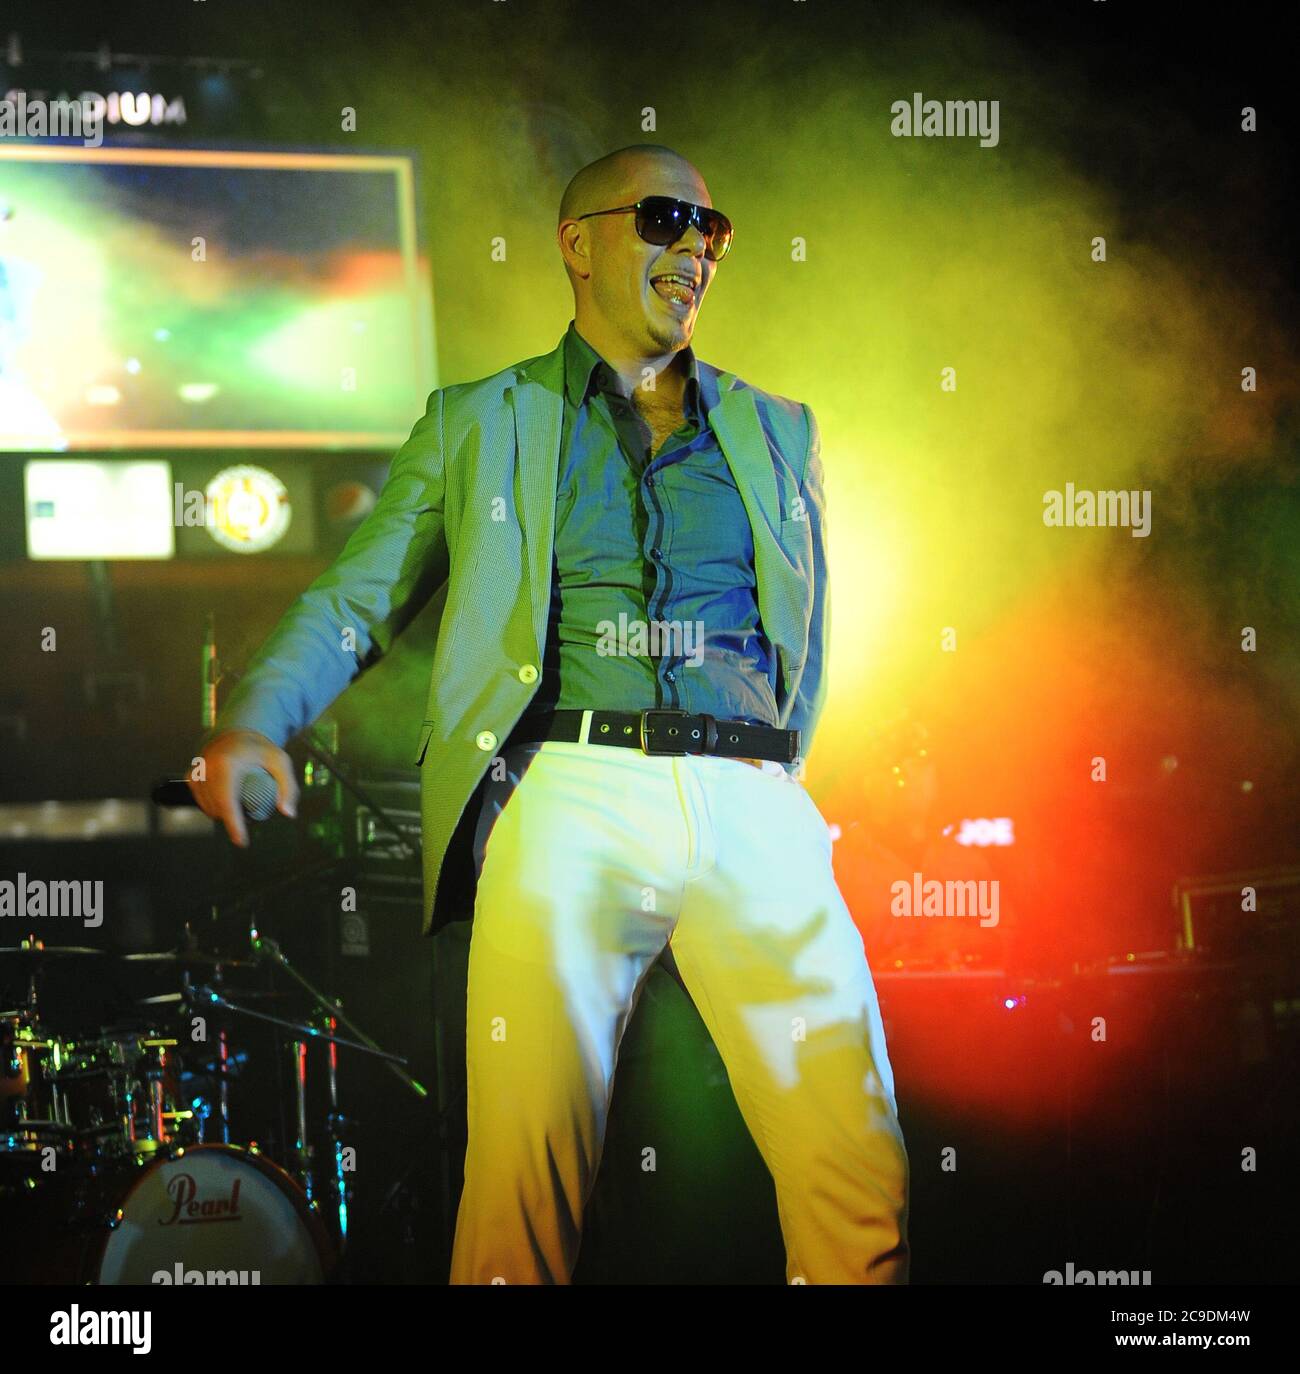 MIAMI GARDENS, FL - SEPTEMBER 04: (EXKLUSIVE BERICHTERSTATTUNG) der in Miami geborene, kubanisch-amerikanische Rapper Pitbull (rmando Christian Prez - geboren am 15. Januar 1981) zeigt seine besten John Travolta Saturday Night Fever Tanzbewegungen in seiner weißen Hose. Rapper und irgendwann in Süd-Florida wohnhaft Fat Joe (aka Joseph Antonio Cartagena - Born: 19-Aug-1970) eröffnete die Show, als Teil des MarlinsÕ Super Samstags Programm, das kostenlose Post-Game-Konzerte während Samstagabend Heimspiele im Sun Life Stadium in Miami Gardens bietet. Pitbull veröffentlichte vor kurzem die unverständliche "Watagatapitusberry" aus seinem kommenden ersten S Stockfoto